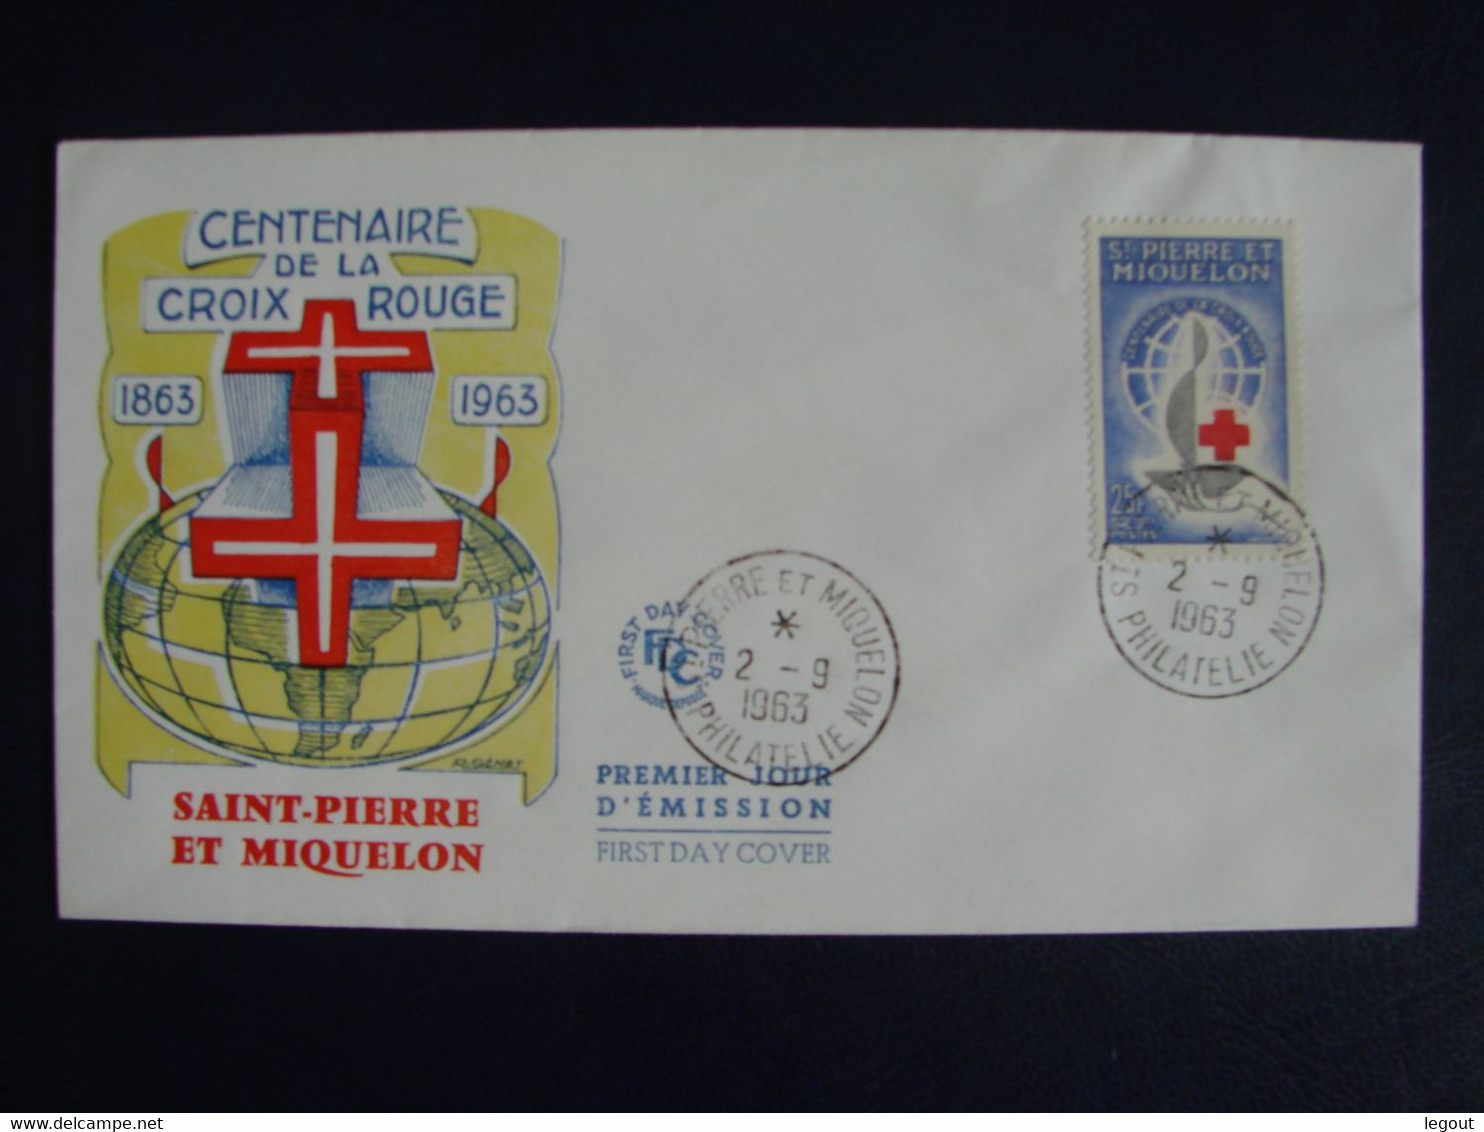 SPM/SAINT PIERRE ET MIQUELON 1er Jour/ FDC CENTEANIRE CROIX ROUGE  COTE FARCIGNY 15€ - Covers & Documents